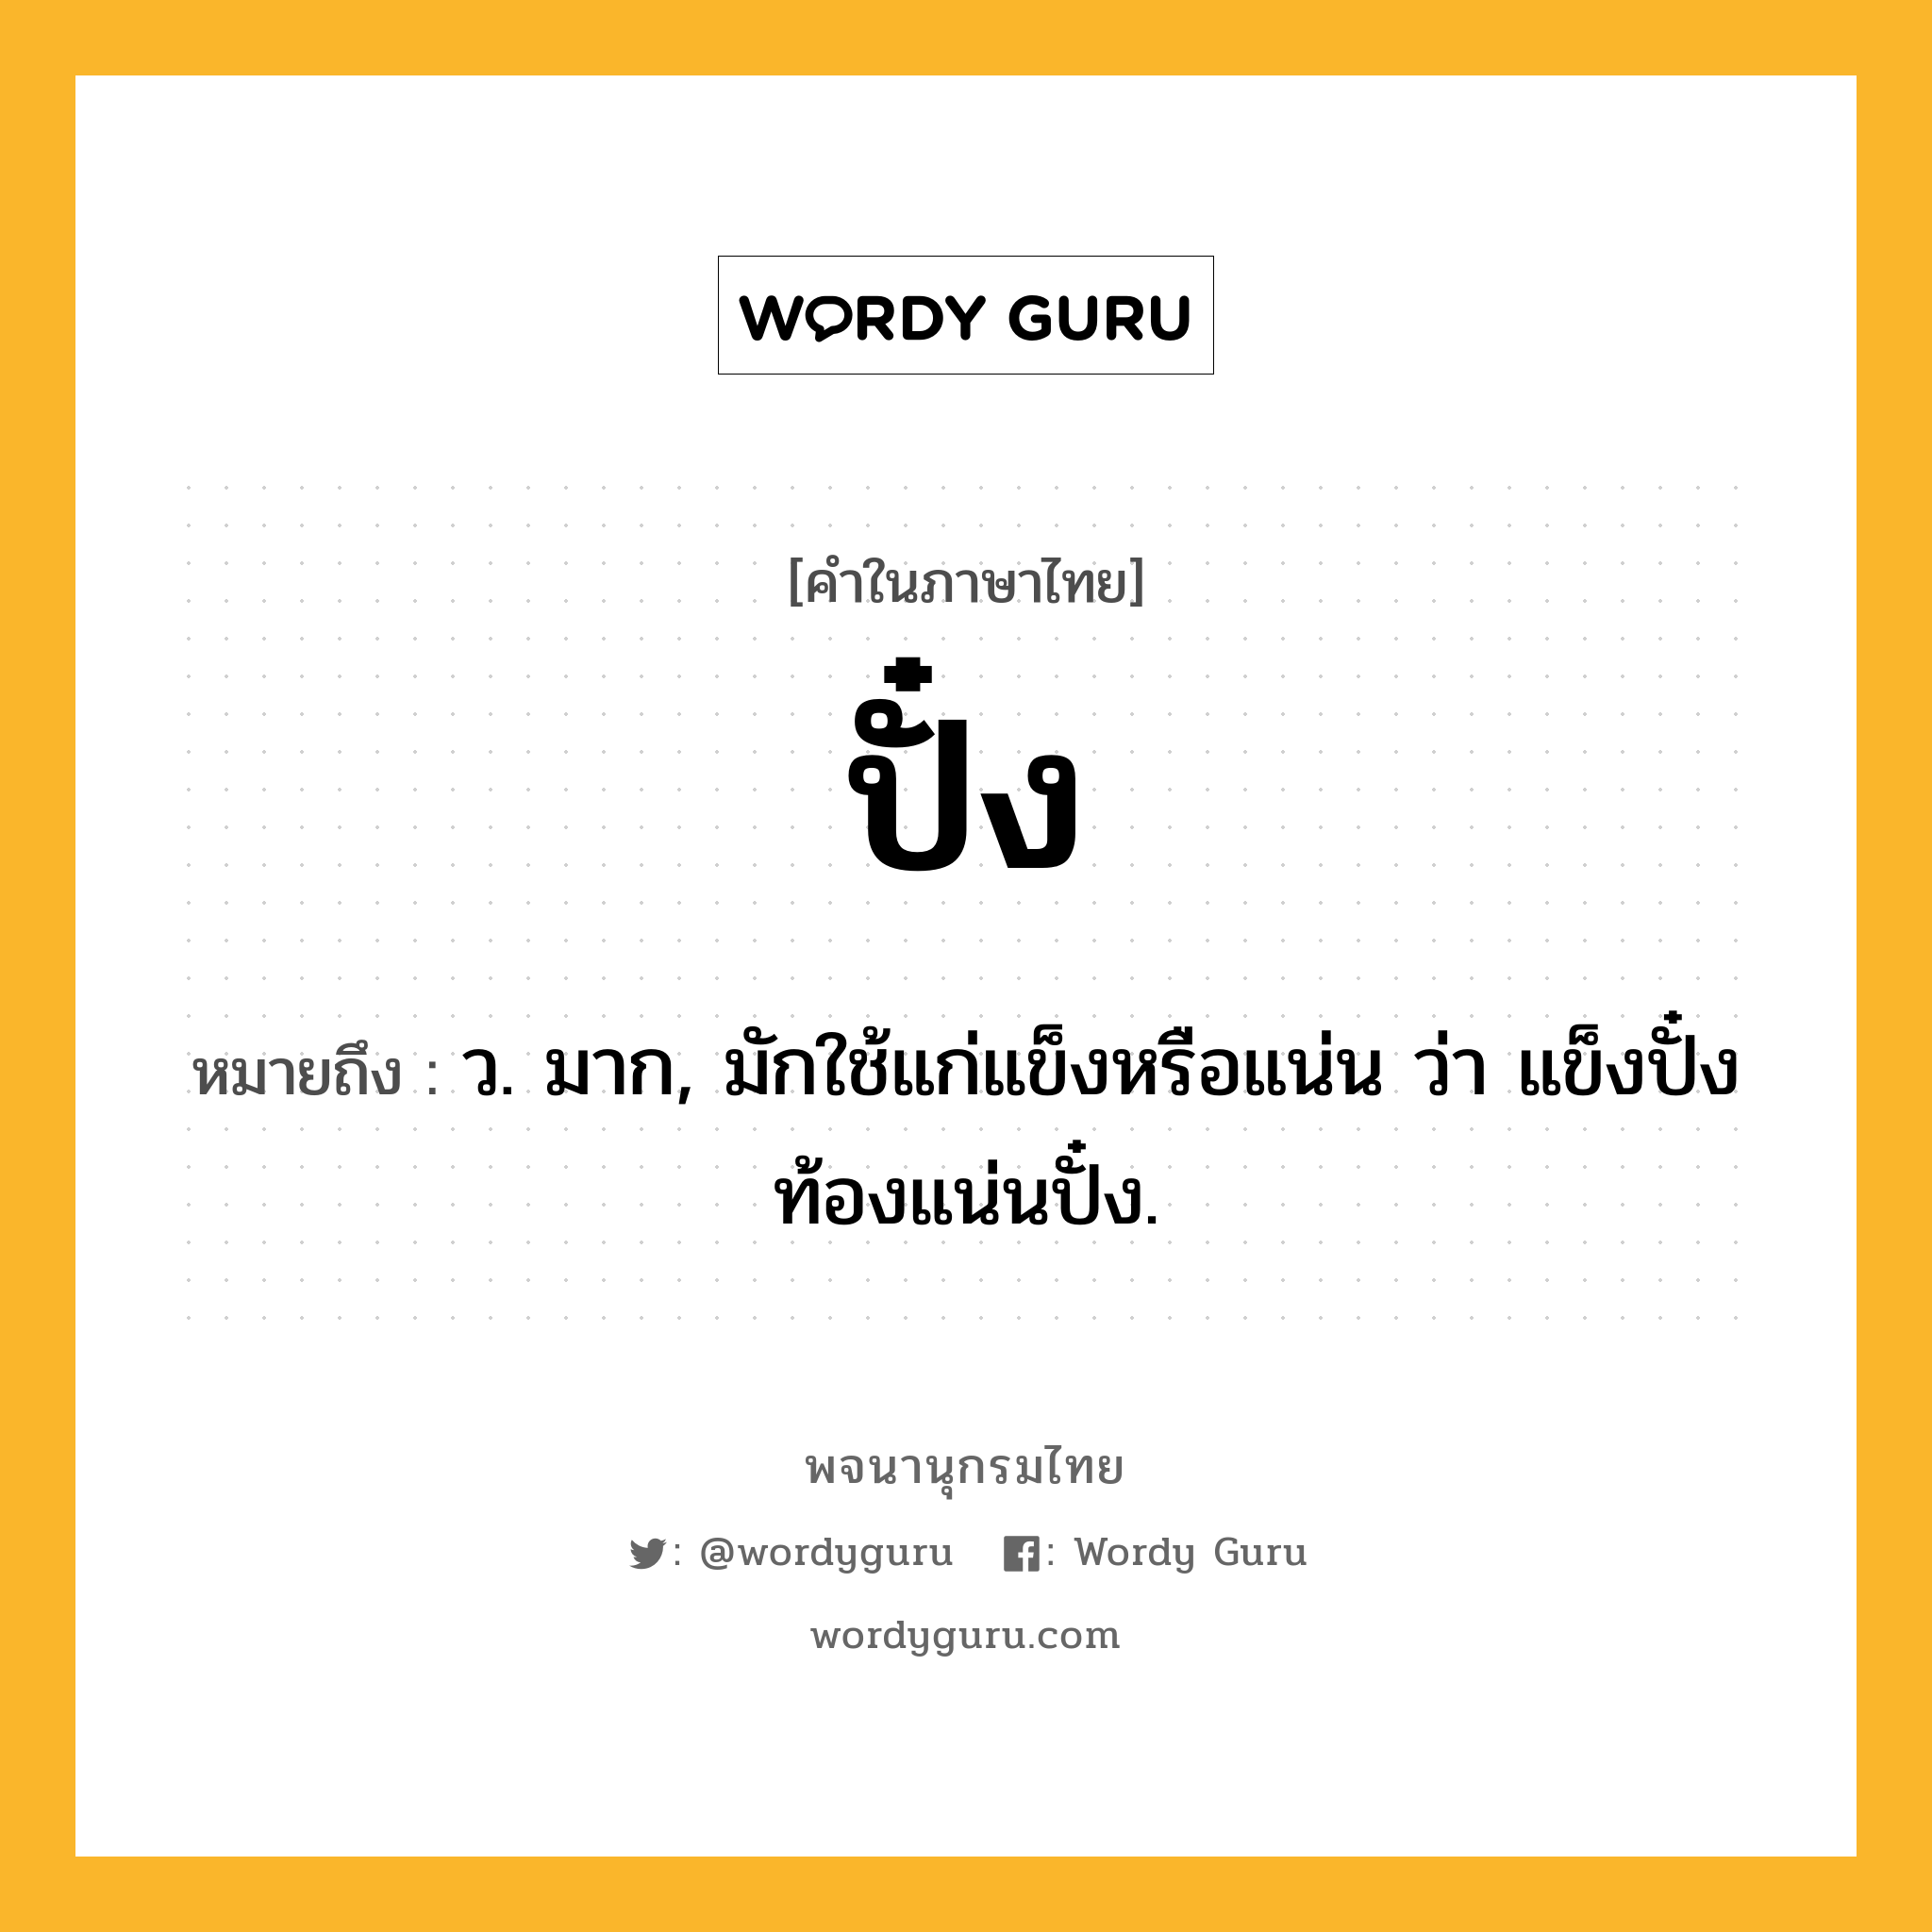 ปั๋ง หมายถึงอะไร?, คำในภาษาไทย ปั๋ง หมายถึง ว. มาก, มักใช้แก่แข็งหรือแน่น ว่า แข็งปั๋ง ท้องแน่นปั๋ง.